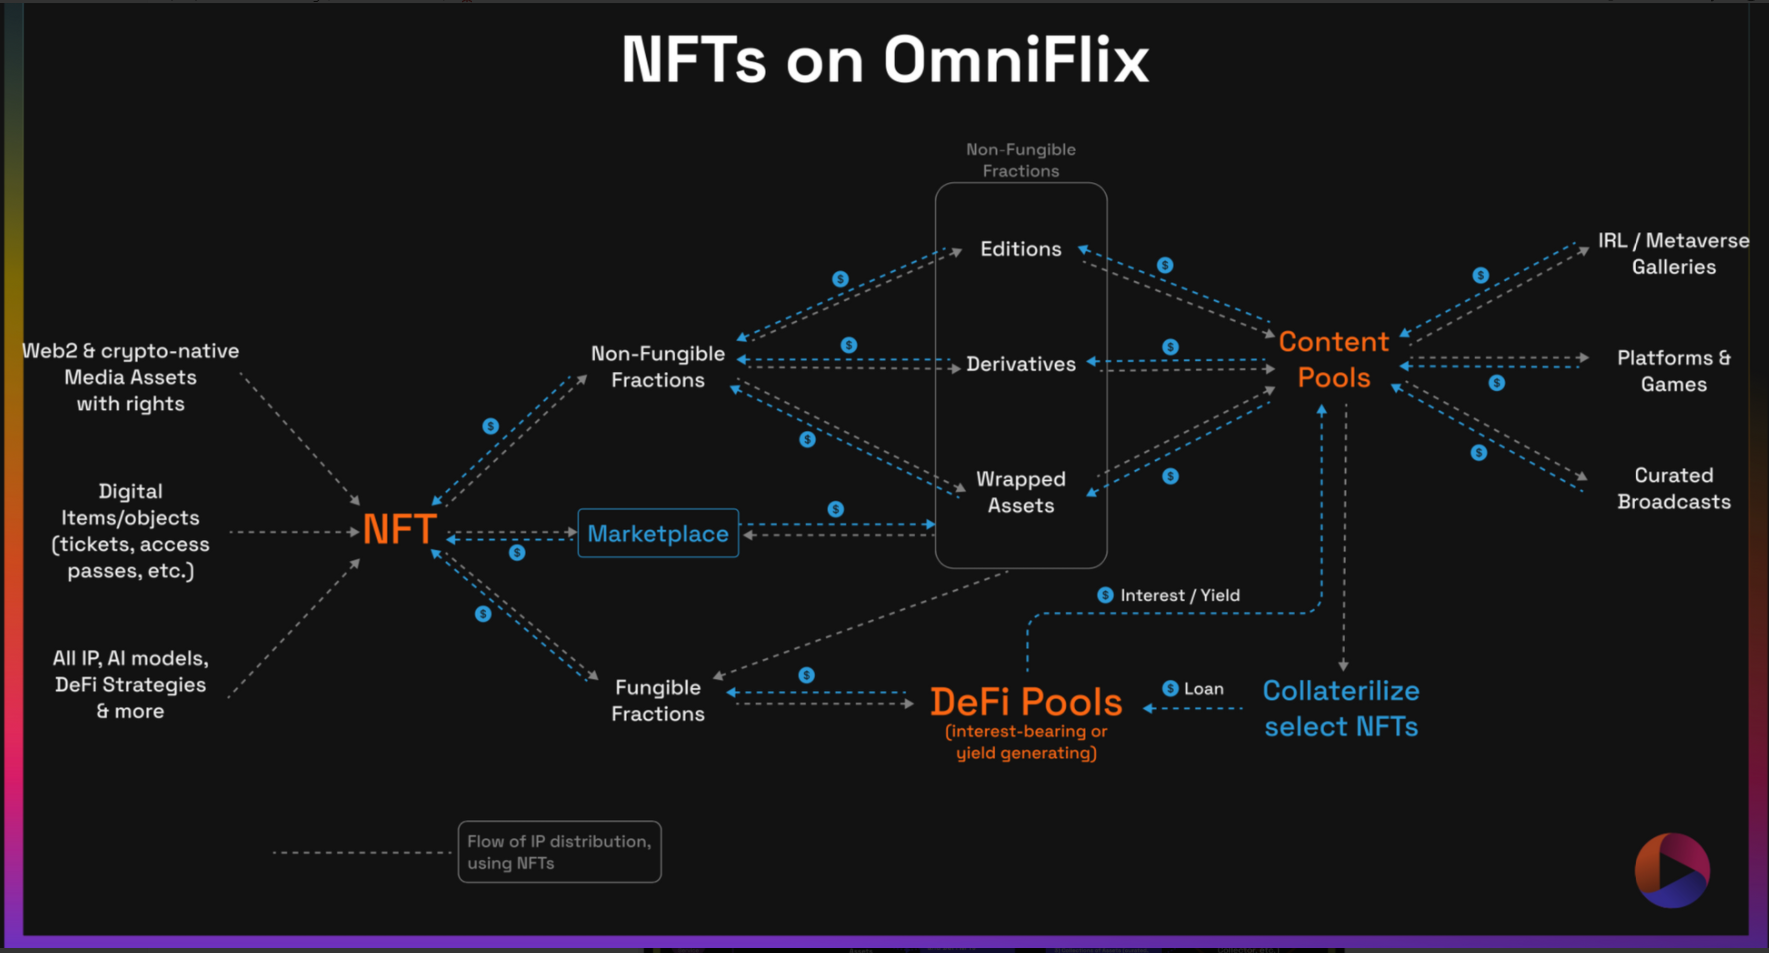 A birds eye view of NFTs on OmniFlix